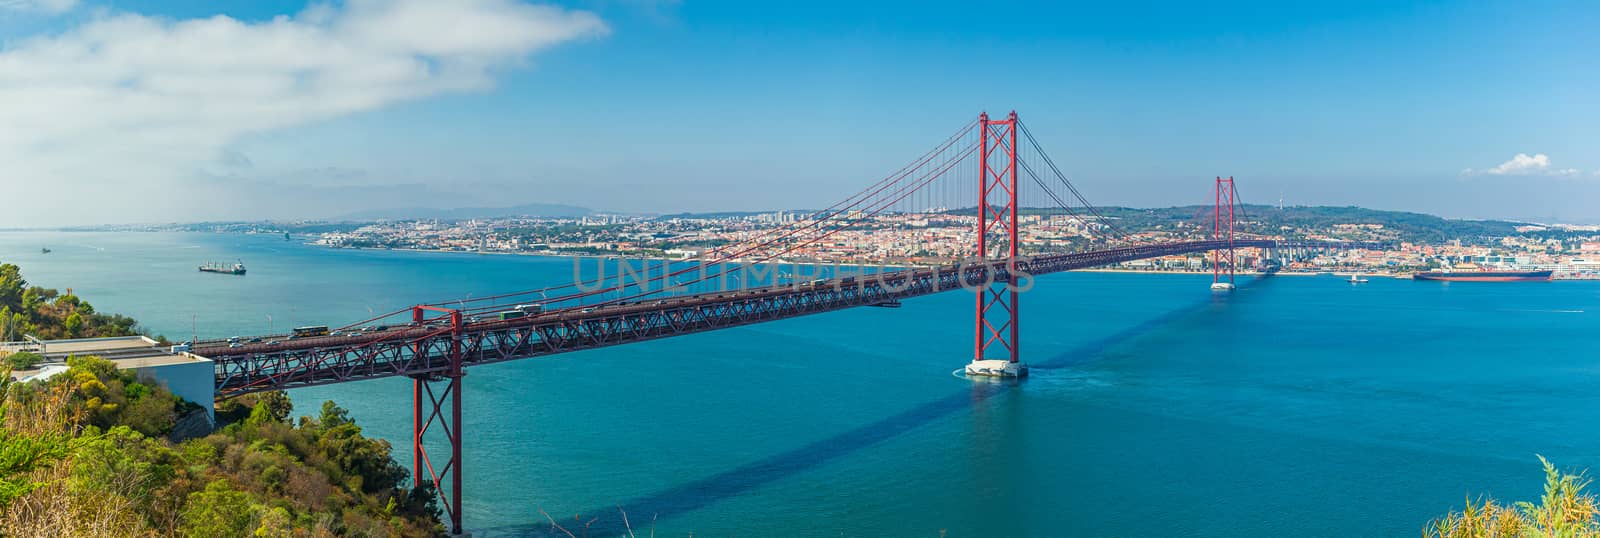 Portugals capital city of Lisbon